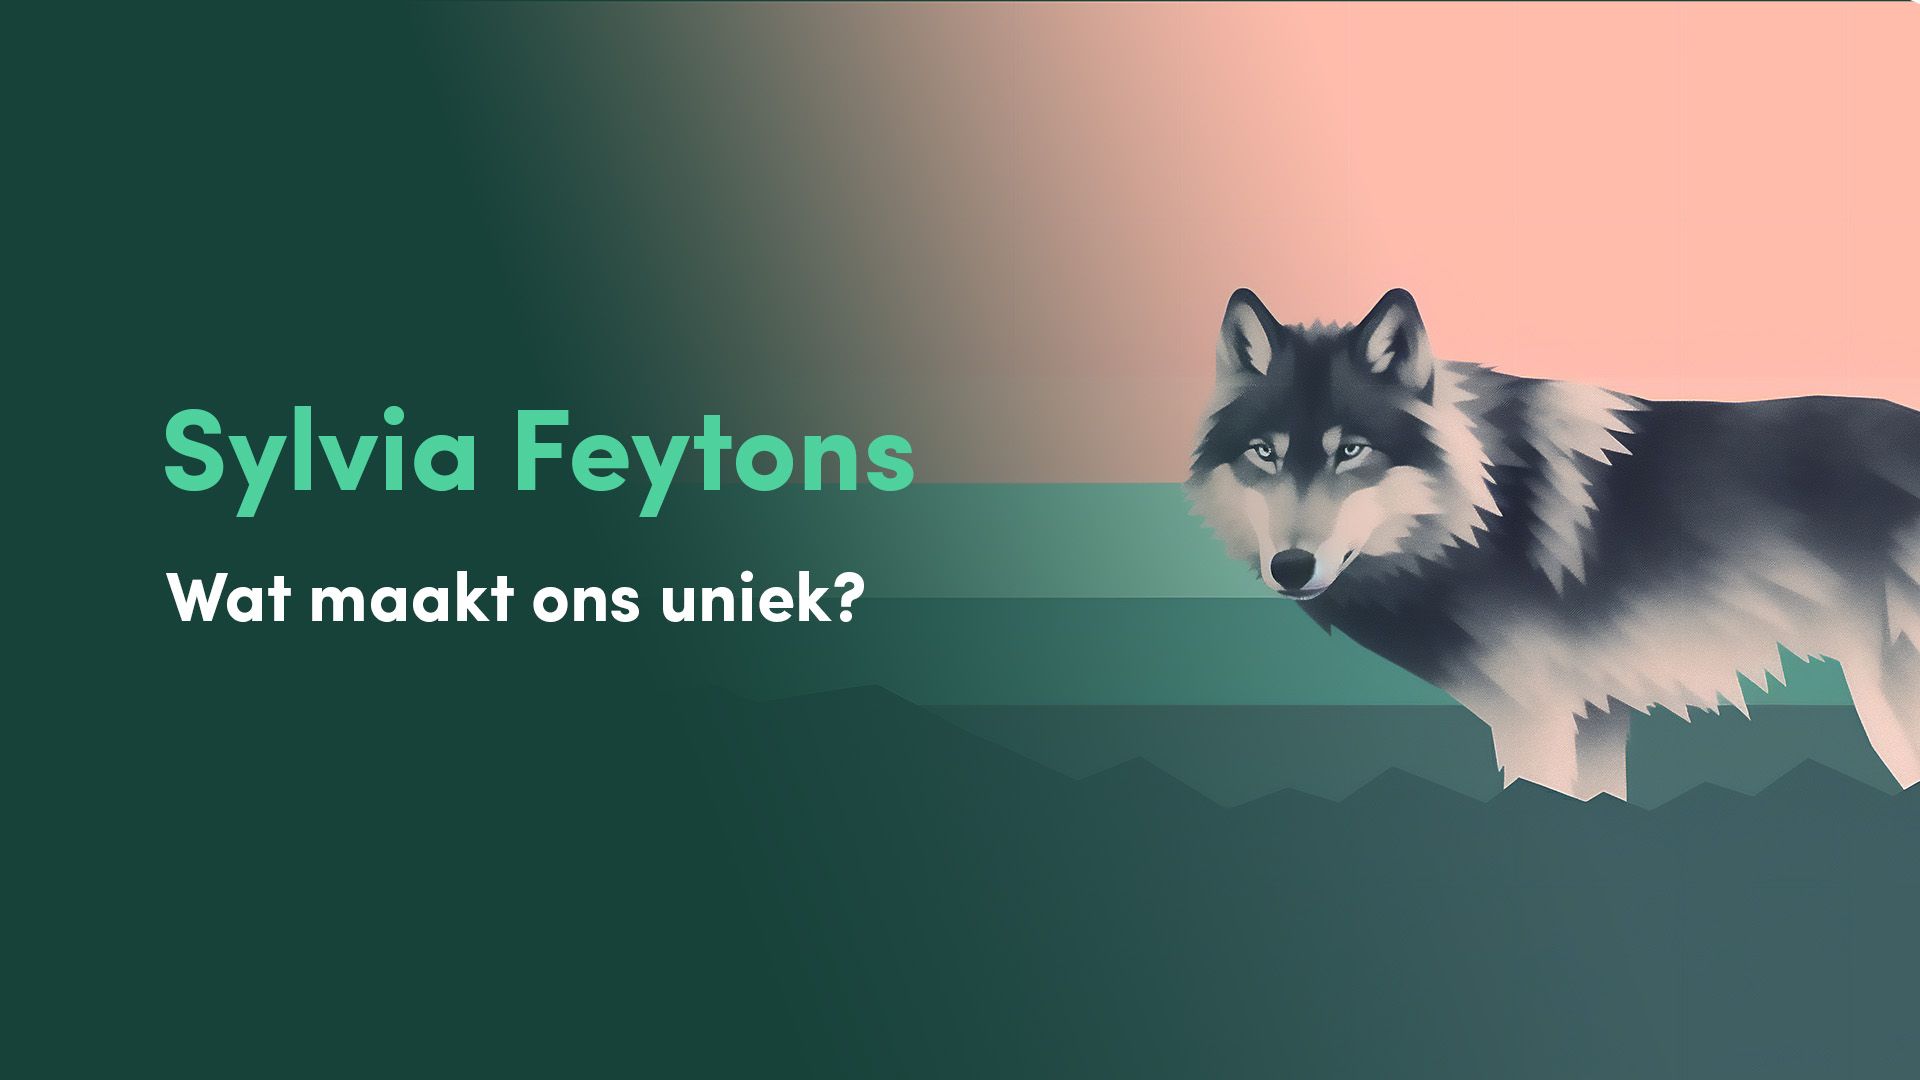 Presentatie slide met de naam 'Sylvia Feytons' en de vraag 'Wat maakt ons uniek?' naast het beeld van een wolf, tegen een achtergrond met geometrische vormen en een kleurverloop van donkergroen naar oranje."